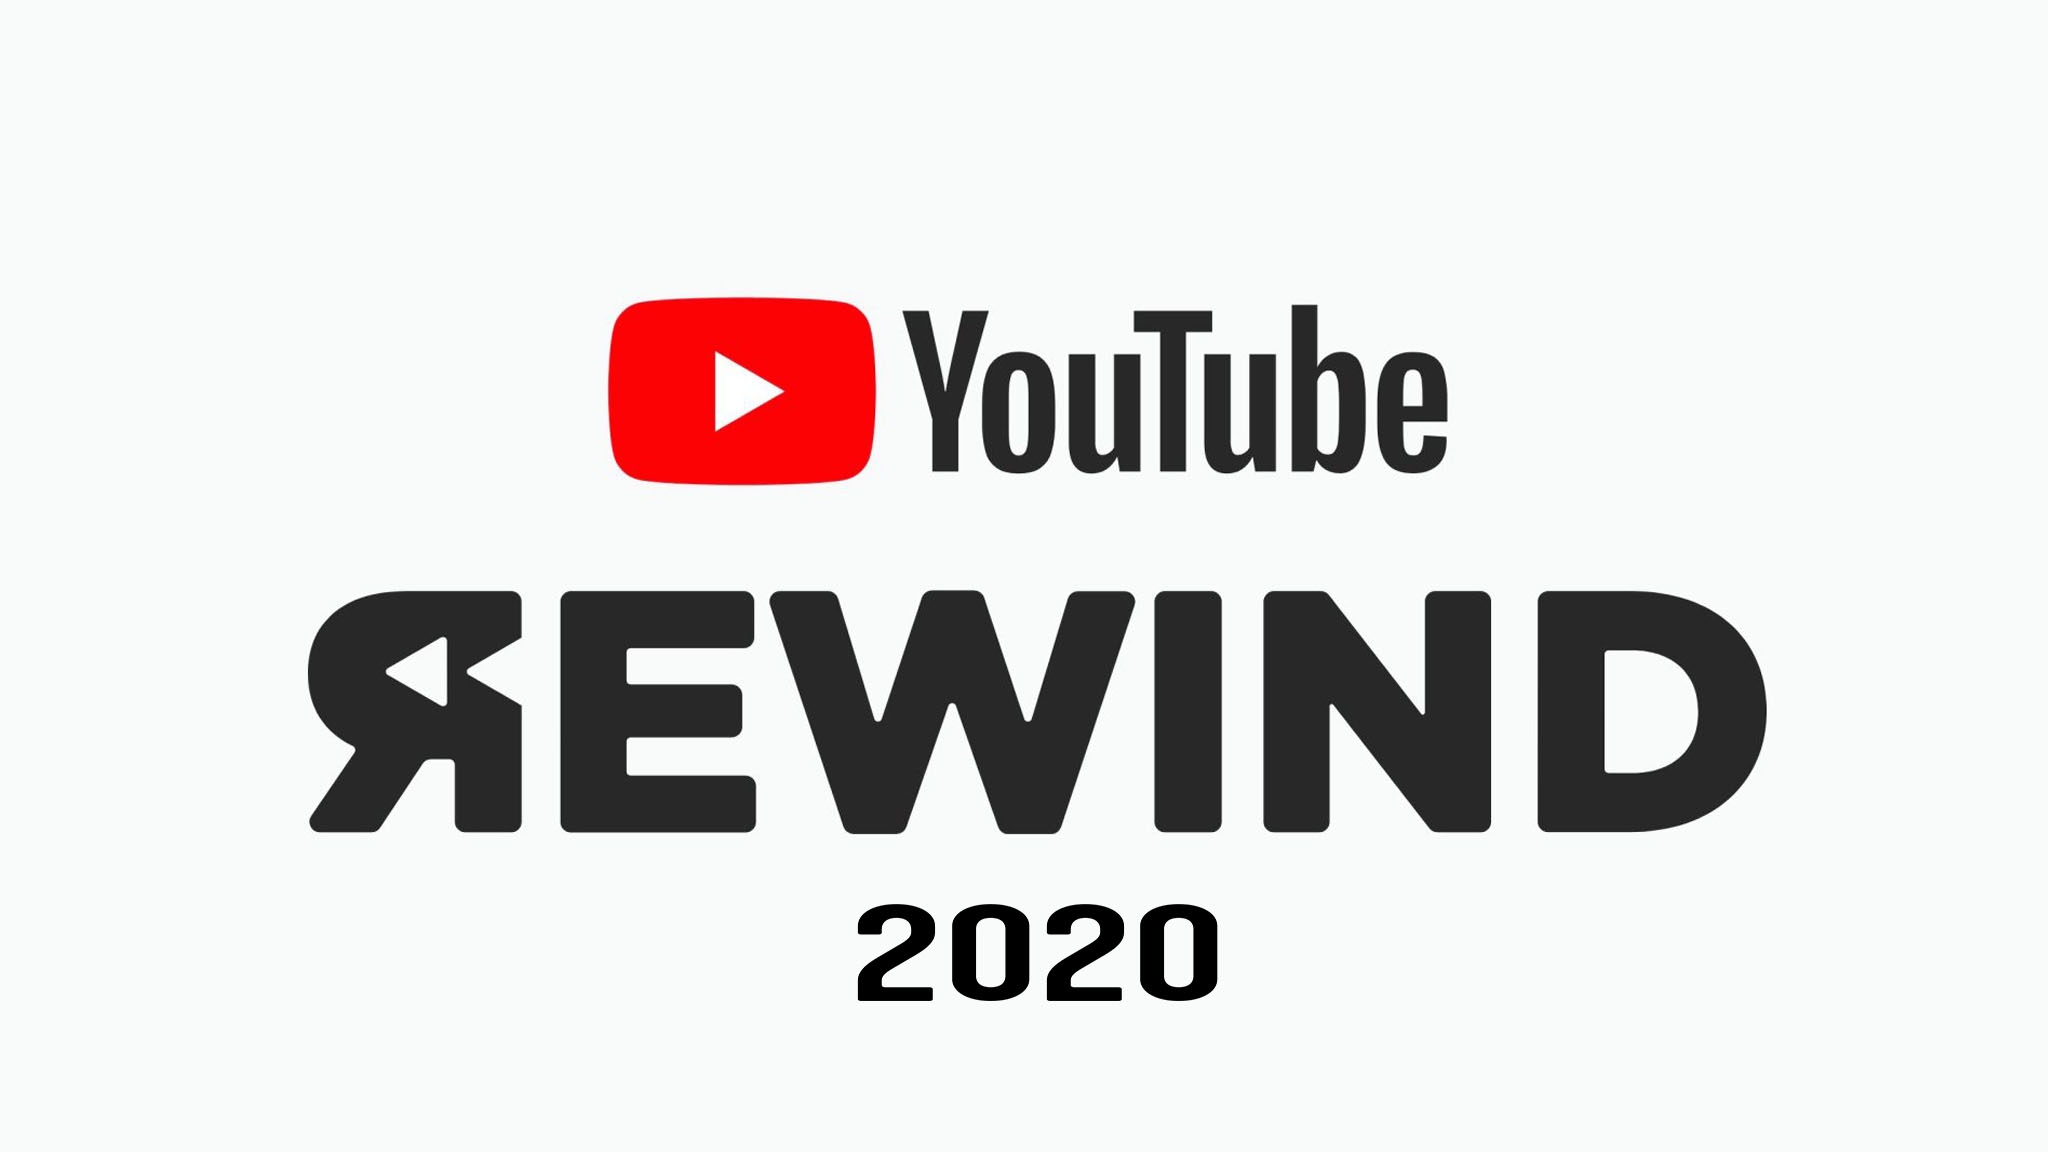 Der Youtube-Jahresrückblick "Rewind 2020" fällt aus, das hat das Unternehmen jetzt mitgeteilt. Foto: Youtube